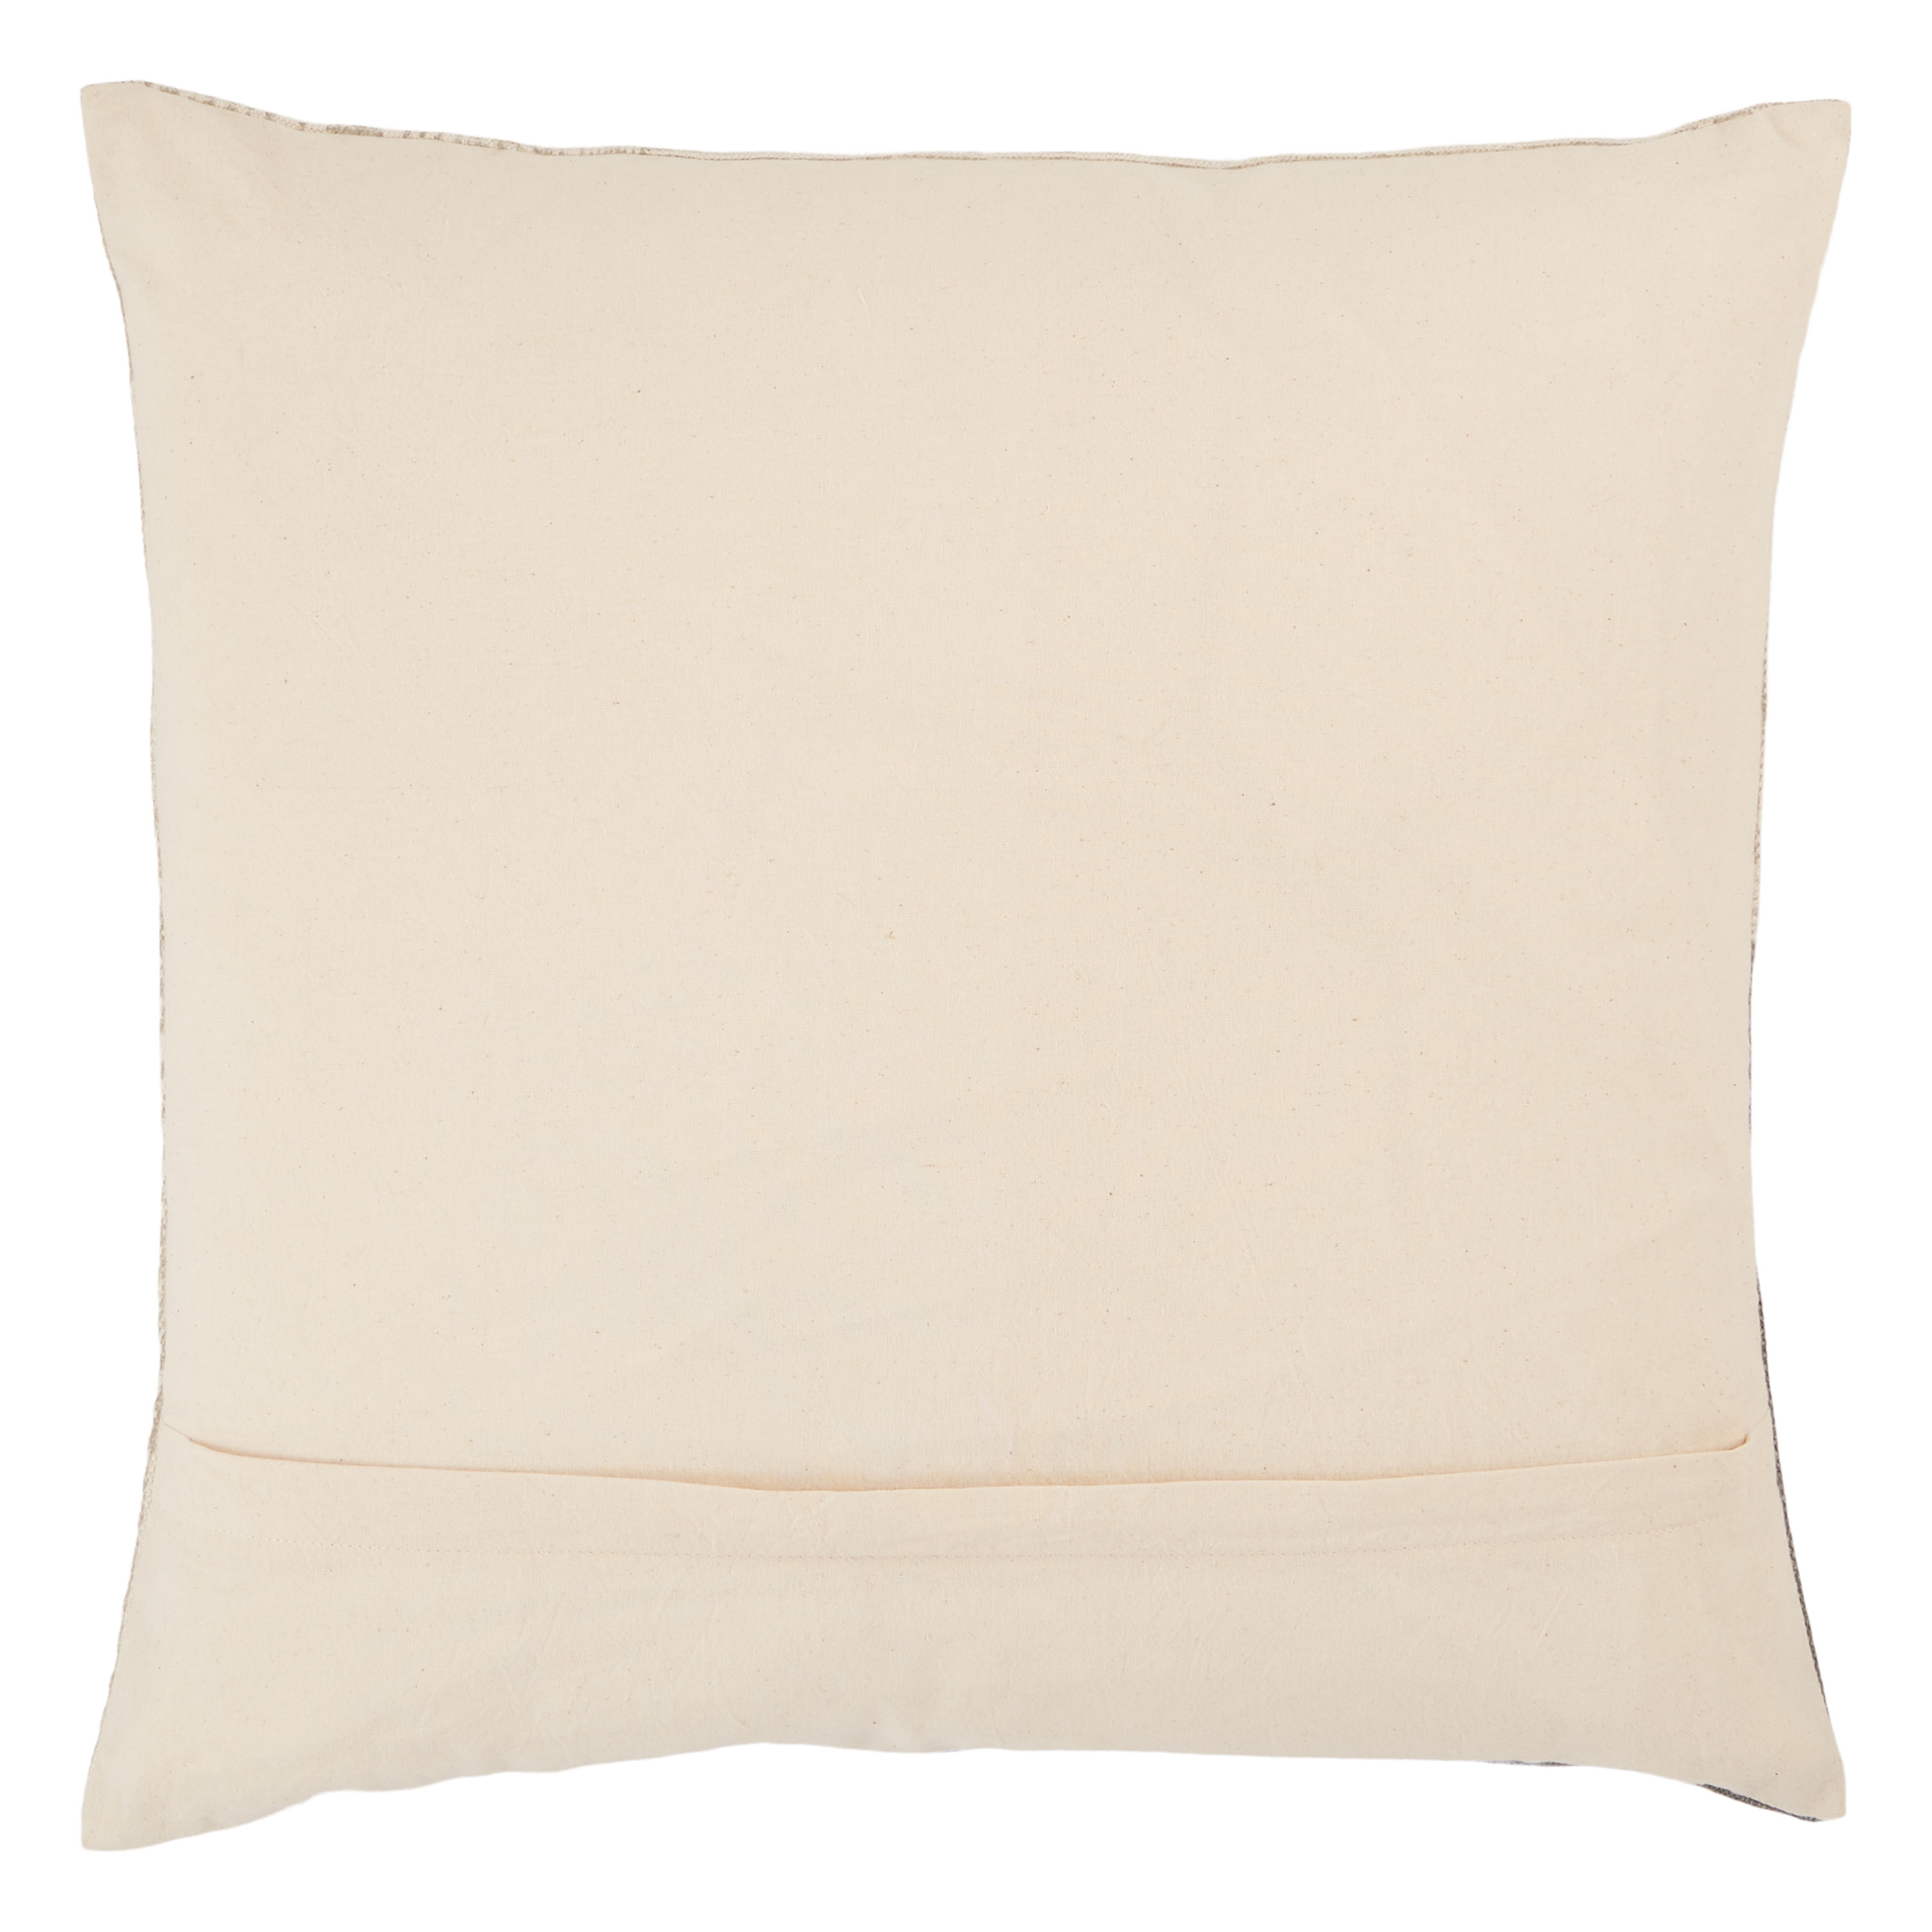 Ayami 20" x 20" Throw Pillow, Taupe, - Image 1